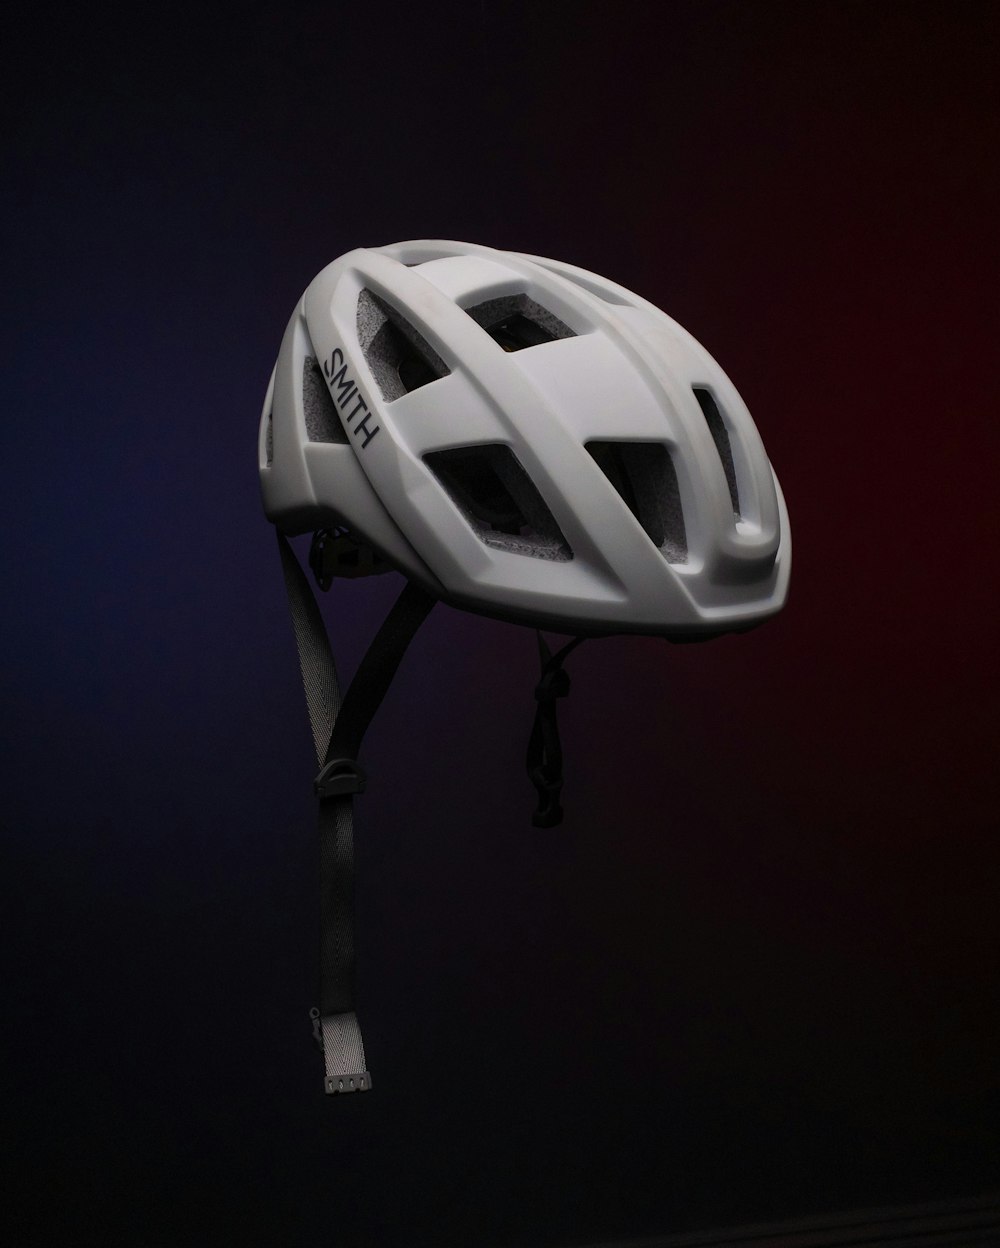 casco de bicicleta blanco y negro